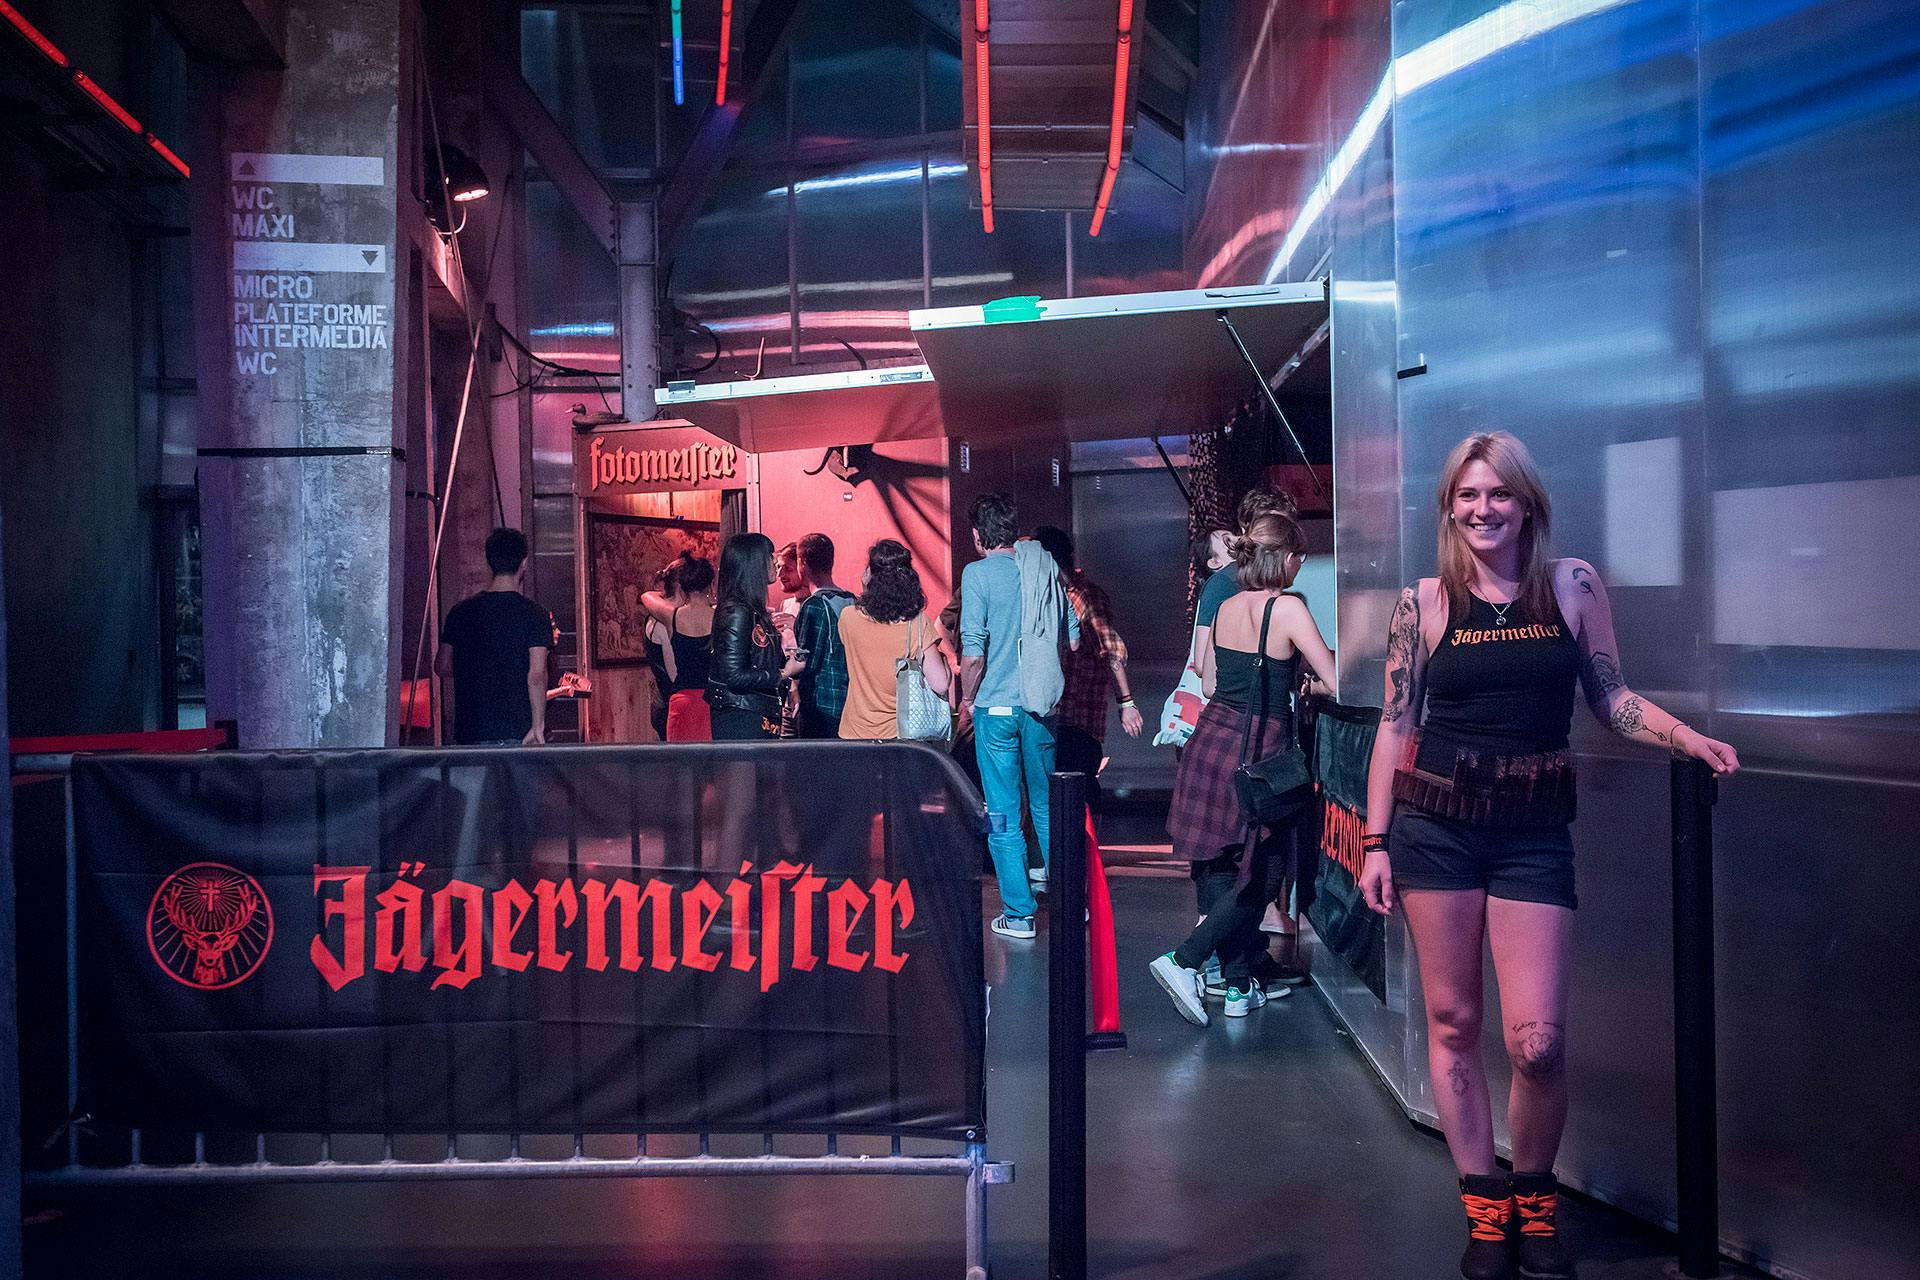 Les hôtesses de la marque allemande Jägermeister accueillent les groupes du Stereolux voulant se faire prendre en photo.  